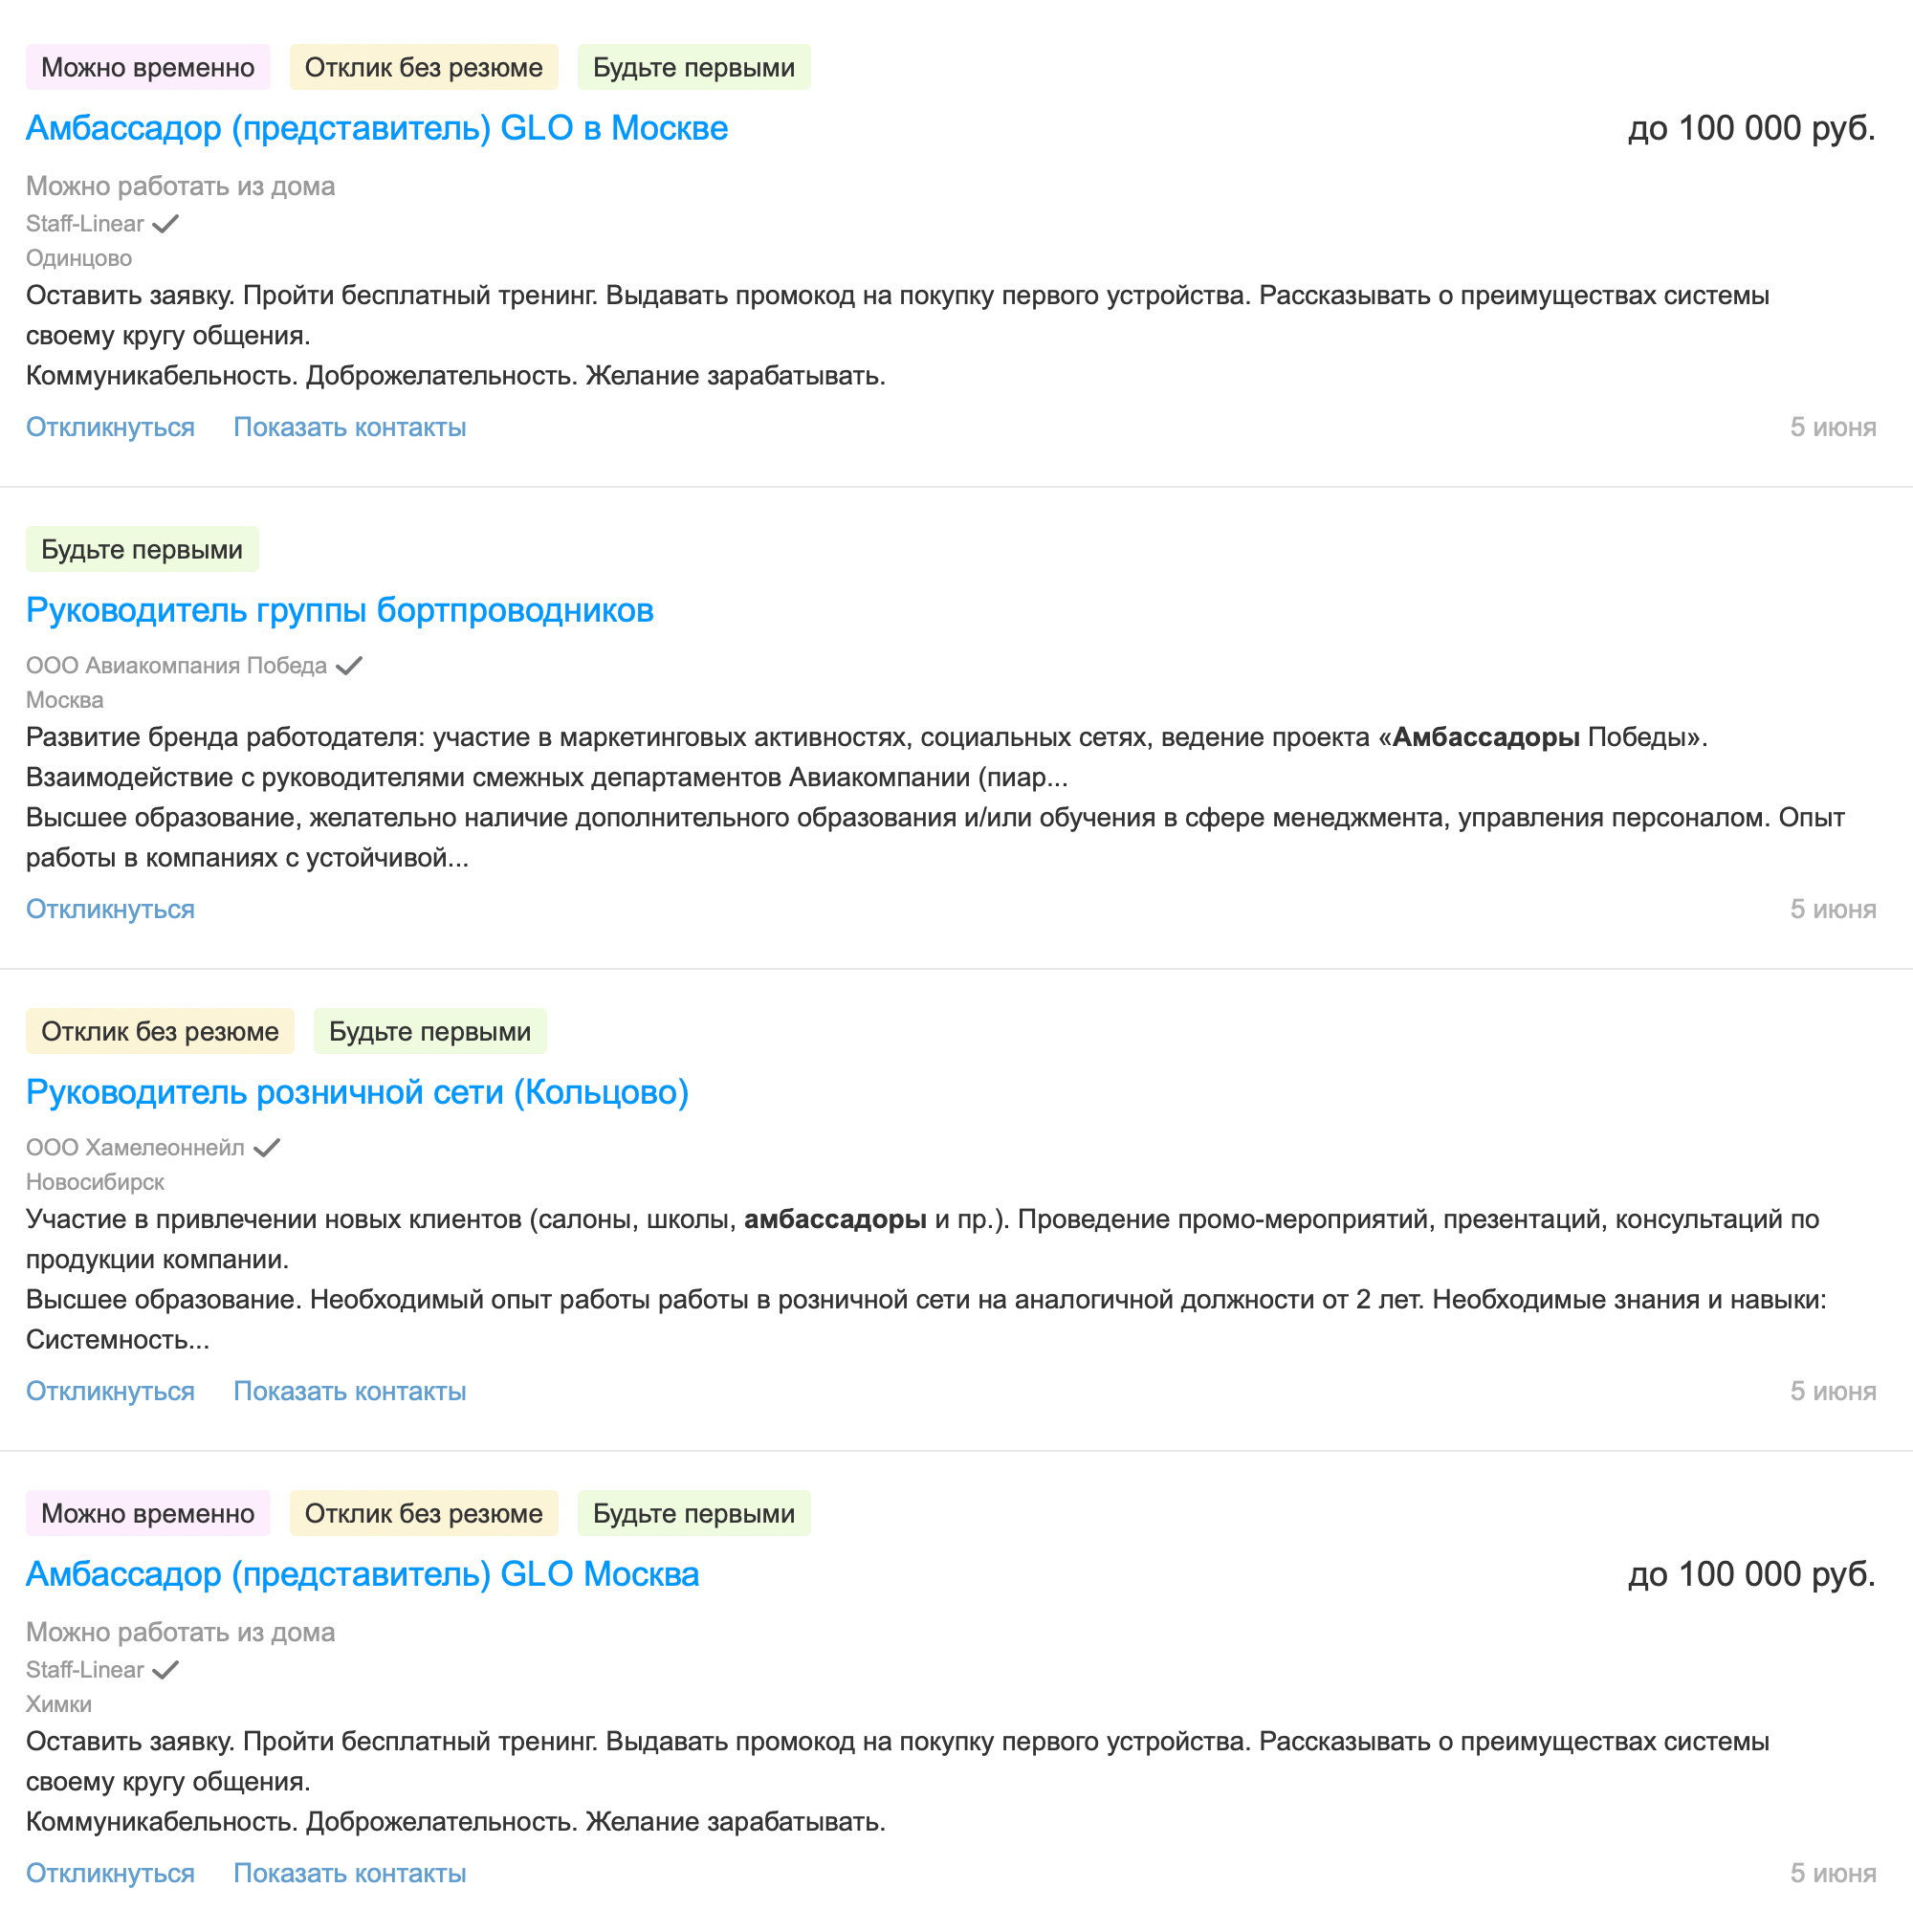 Амбассадоров обычно не ищут через сервисы поиска работы, но на «Хедхантере» есть несколько таких вакансий с зарплатой до 100 тысяч рублей